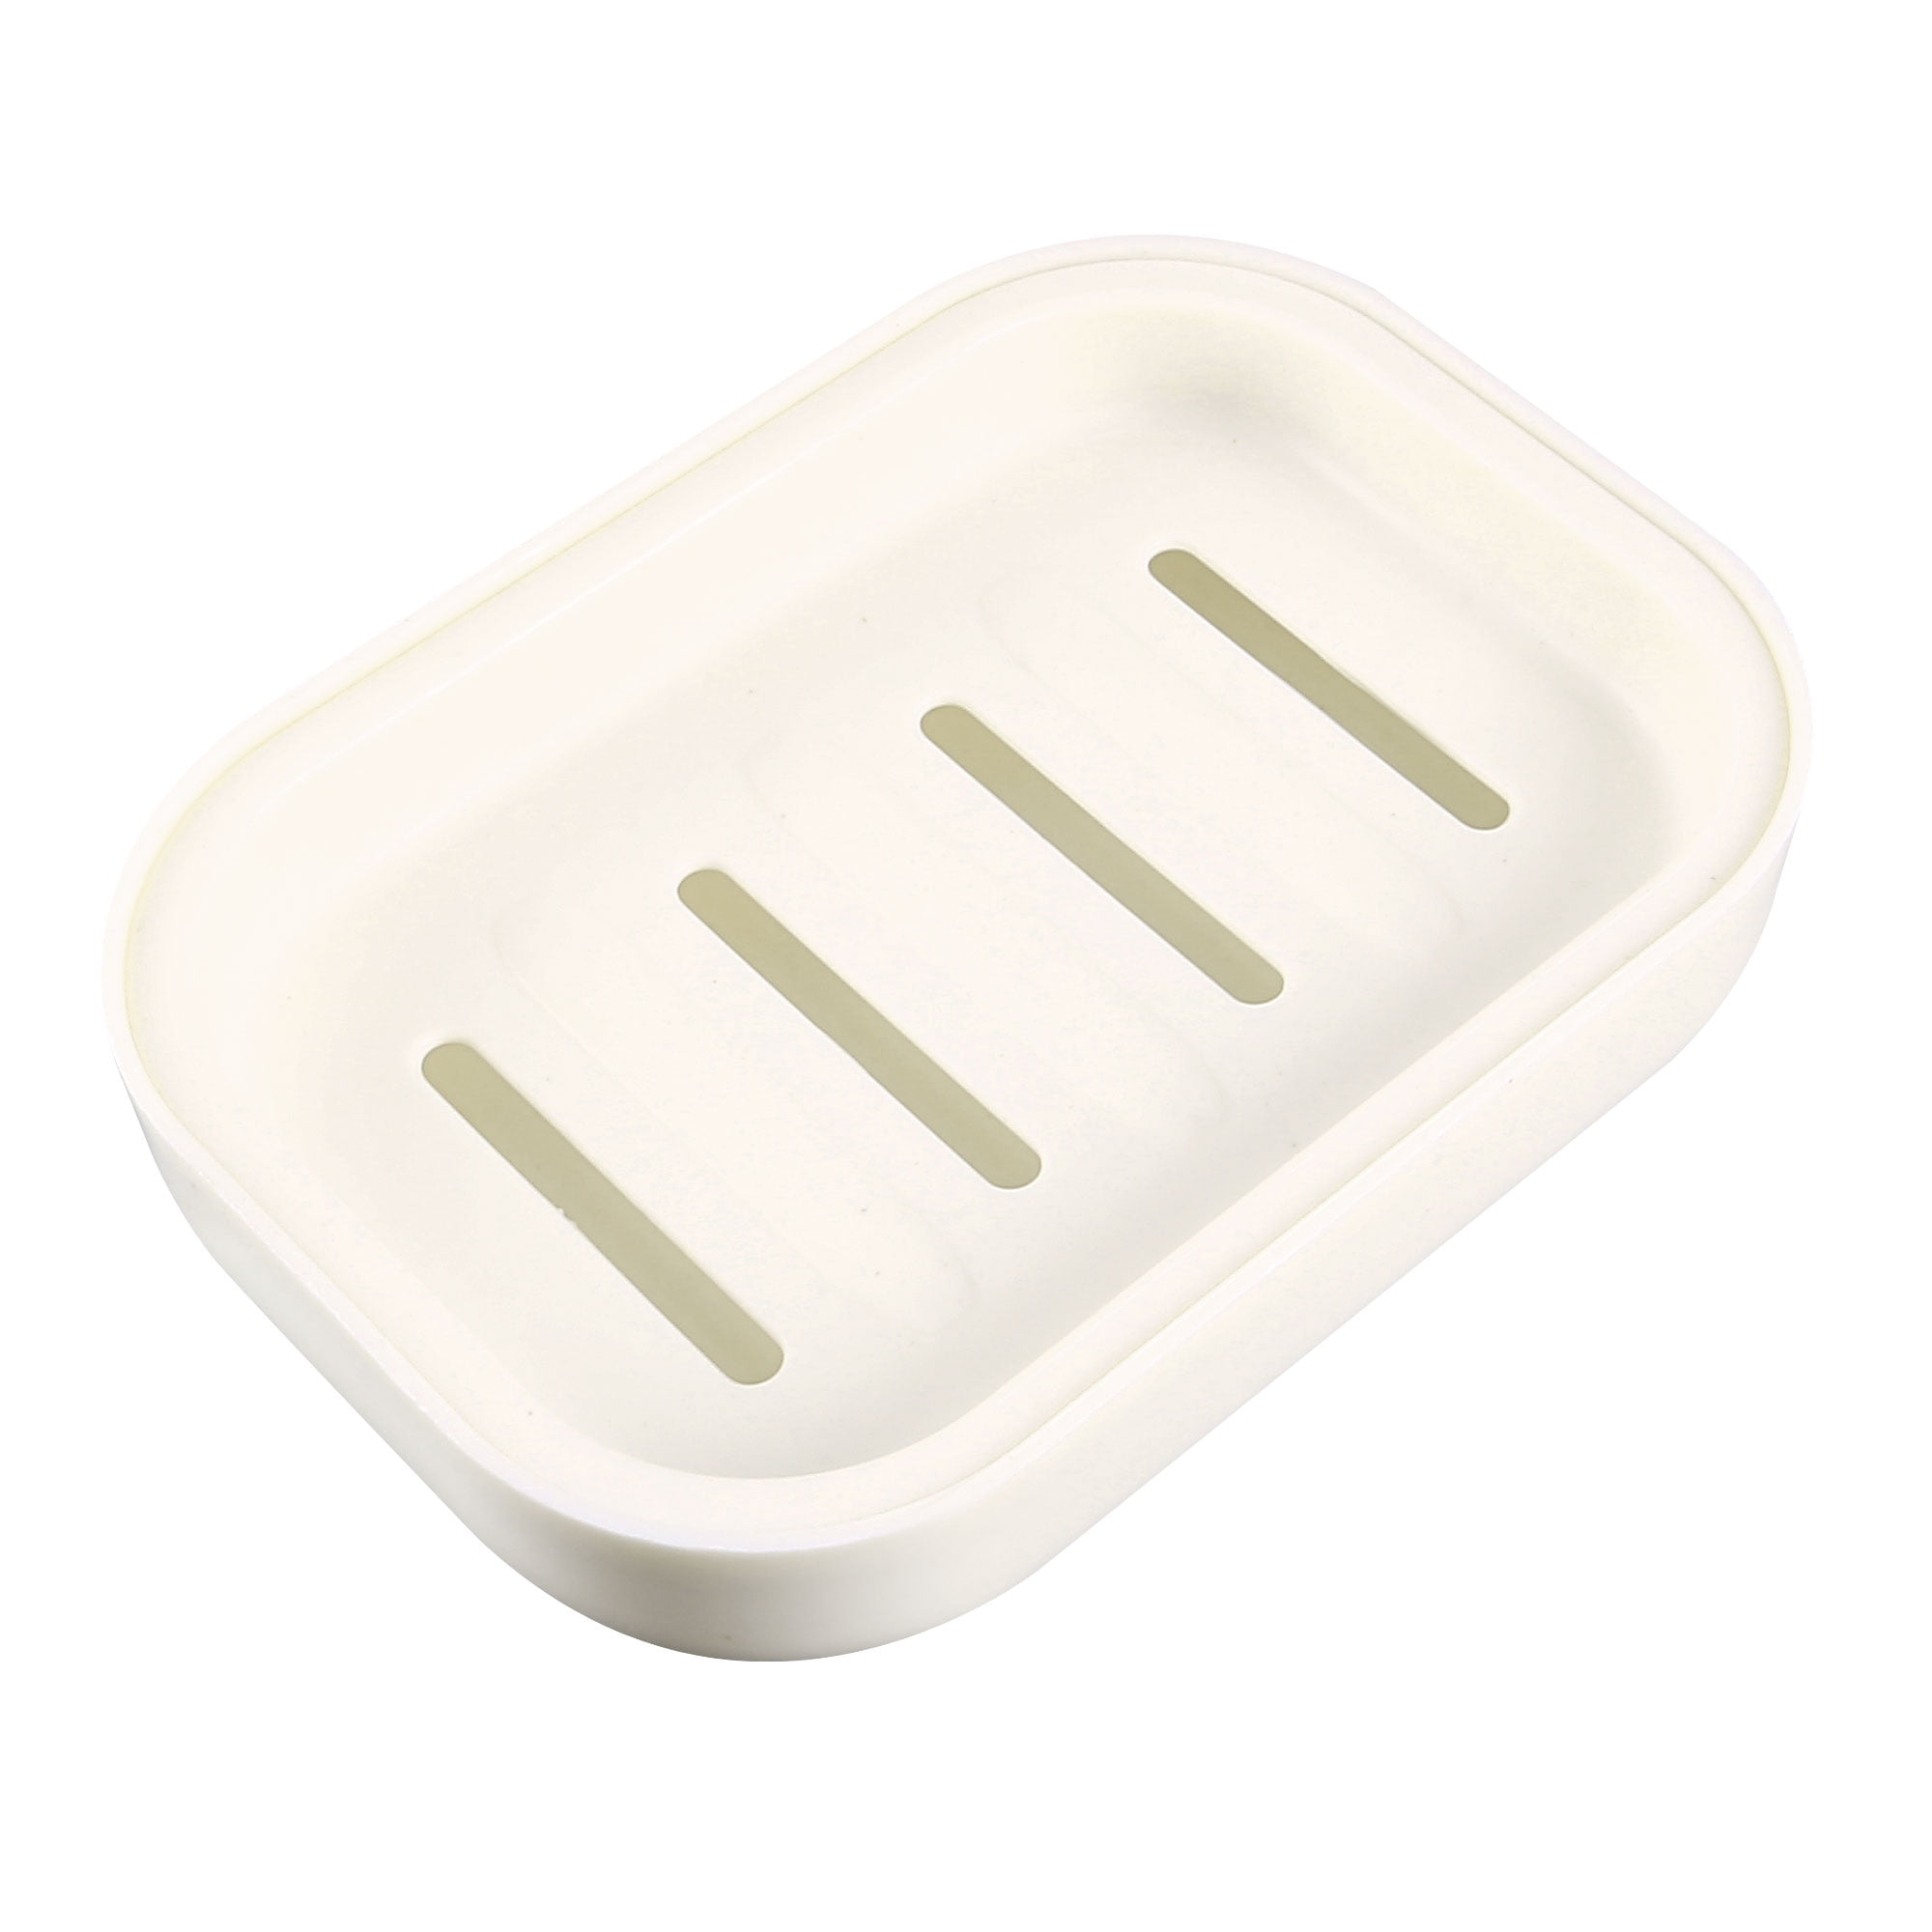 Soap Dish Adjustable Shower Rail Slide Soap Plates Bathroom Holder C 